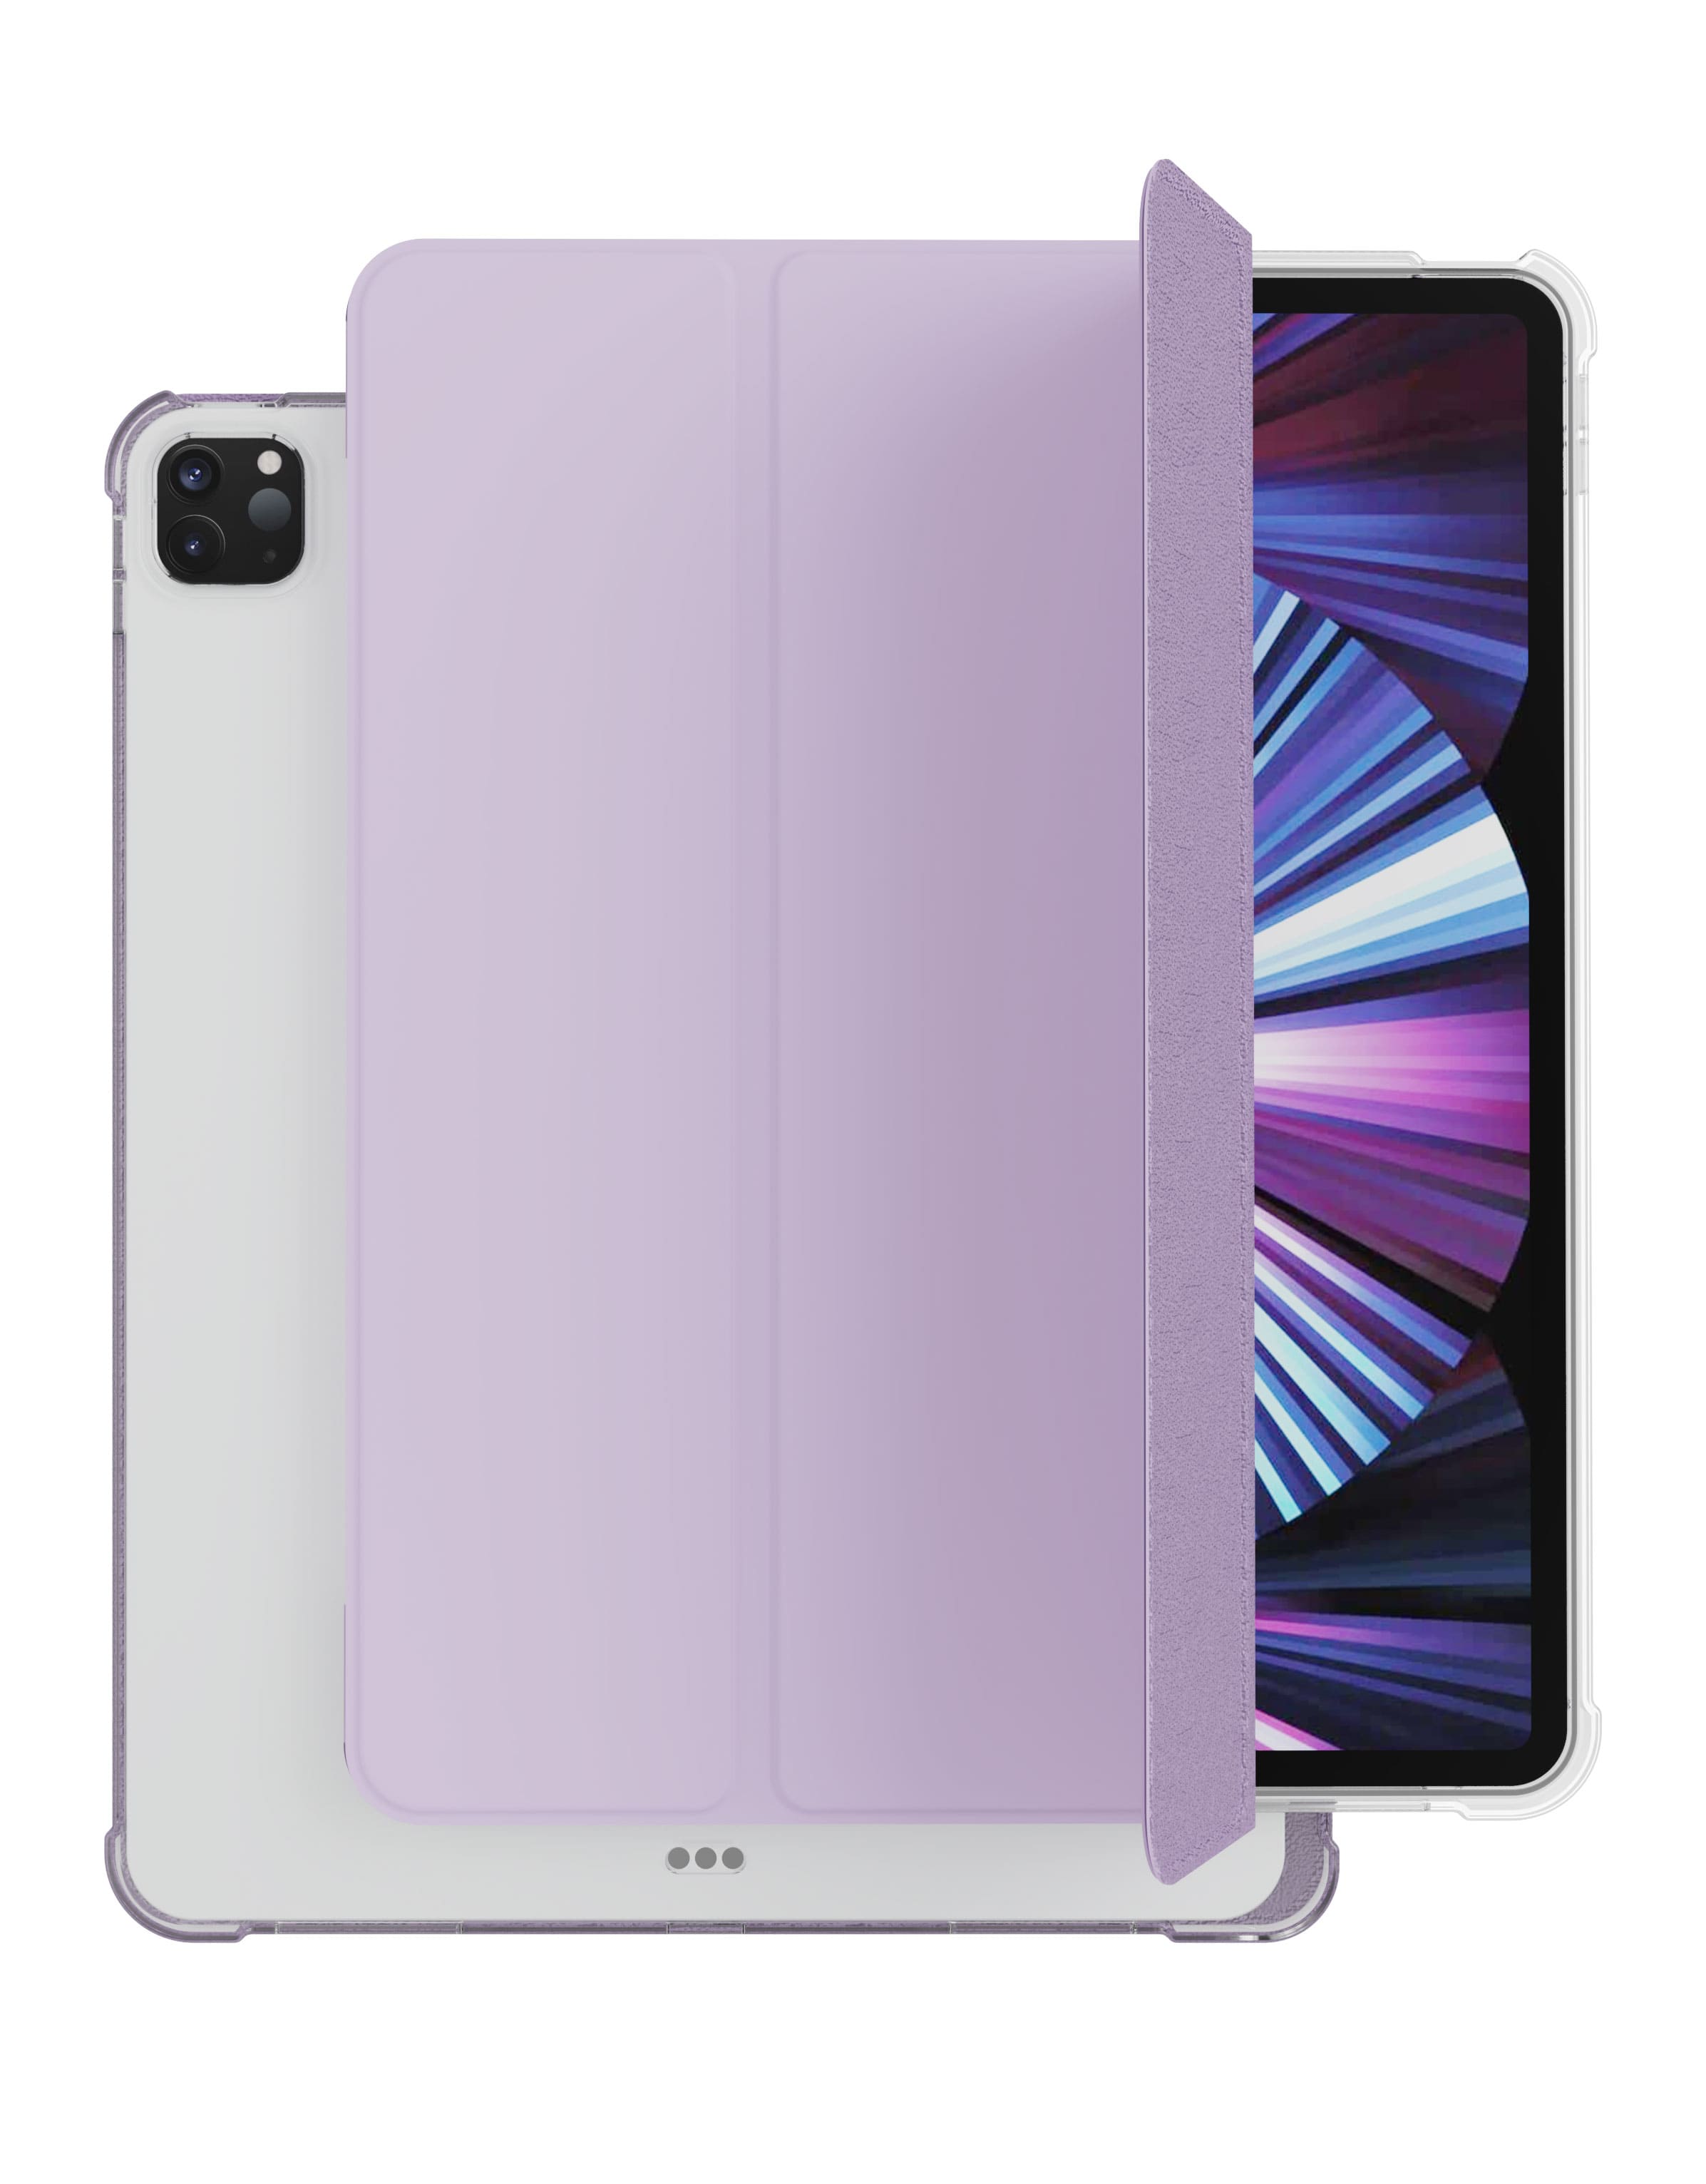 Фото — Чехол vlp для iPad Pro 2021 (11") Dual Folio, фиолетовый